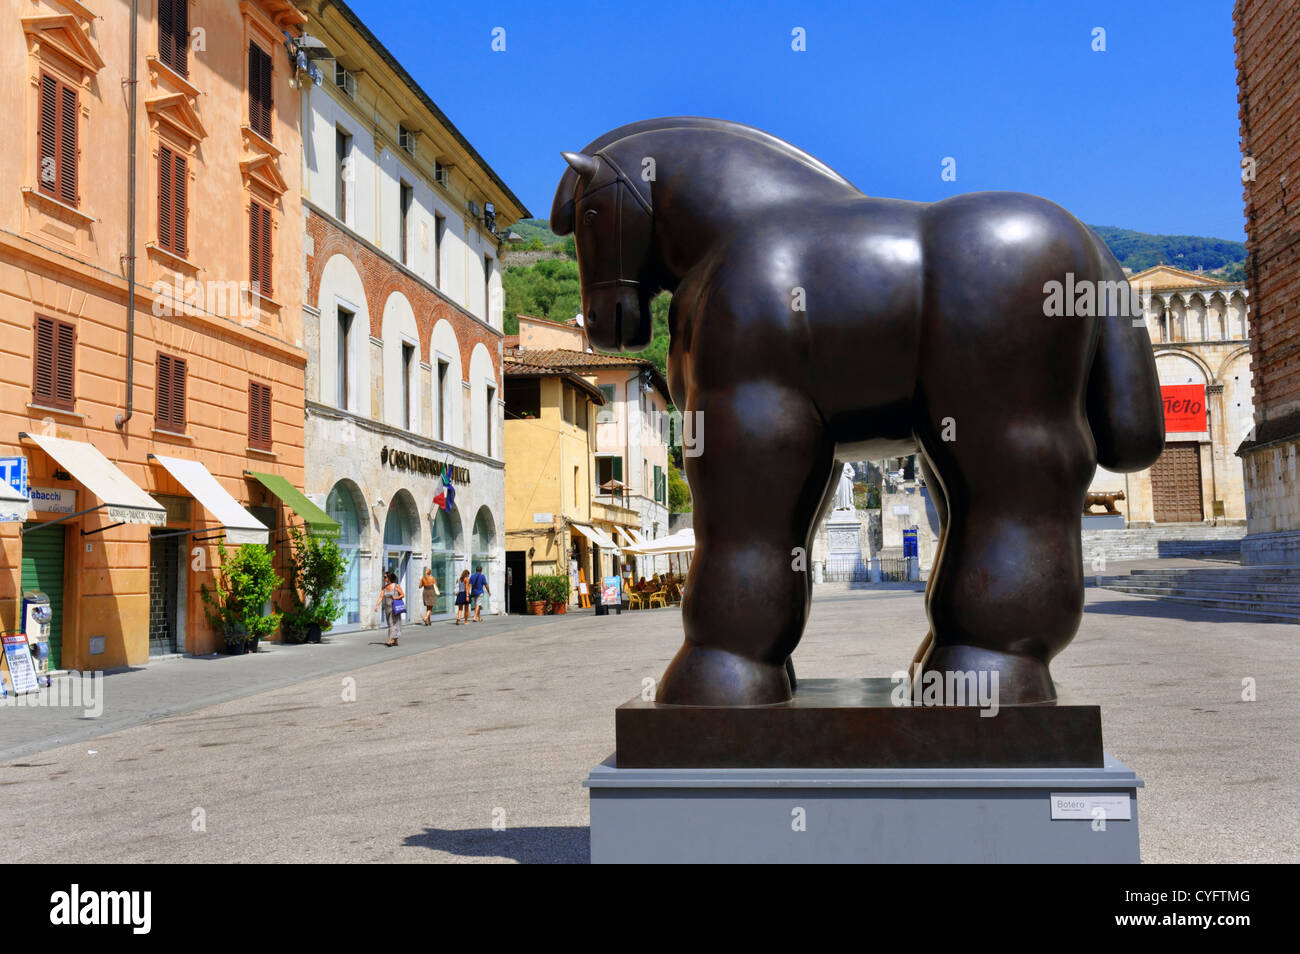 Las esculturas del artista Fernando Botero en exhibición en la plaza central de Pietrasanta, Toscana Italia Foto de stock